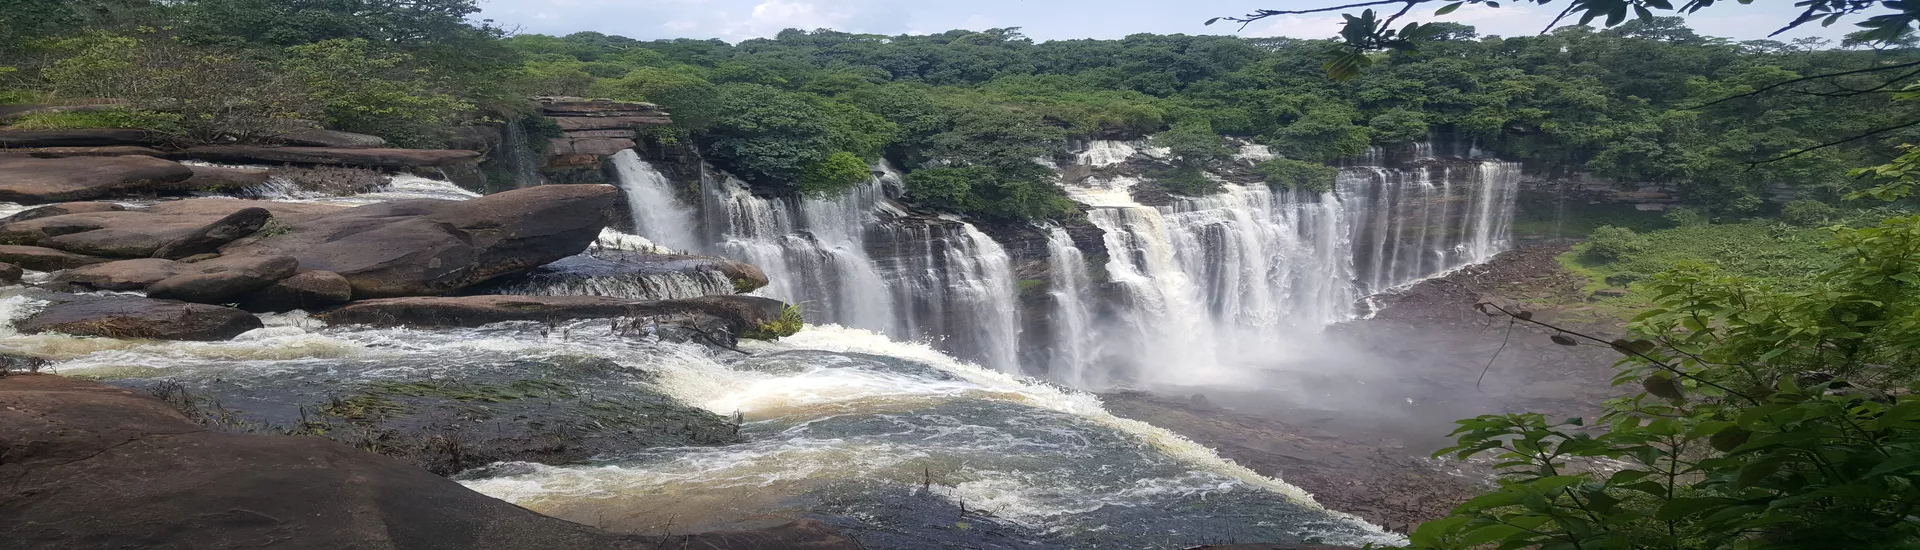 Calandula waterfall, Angola